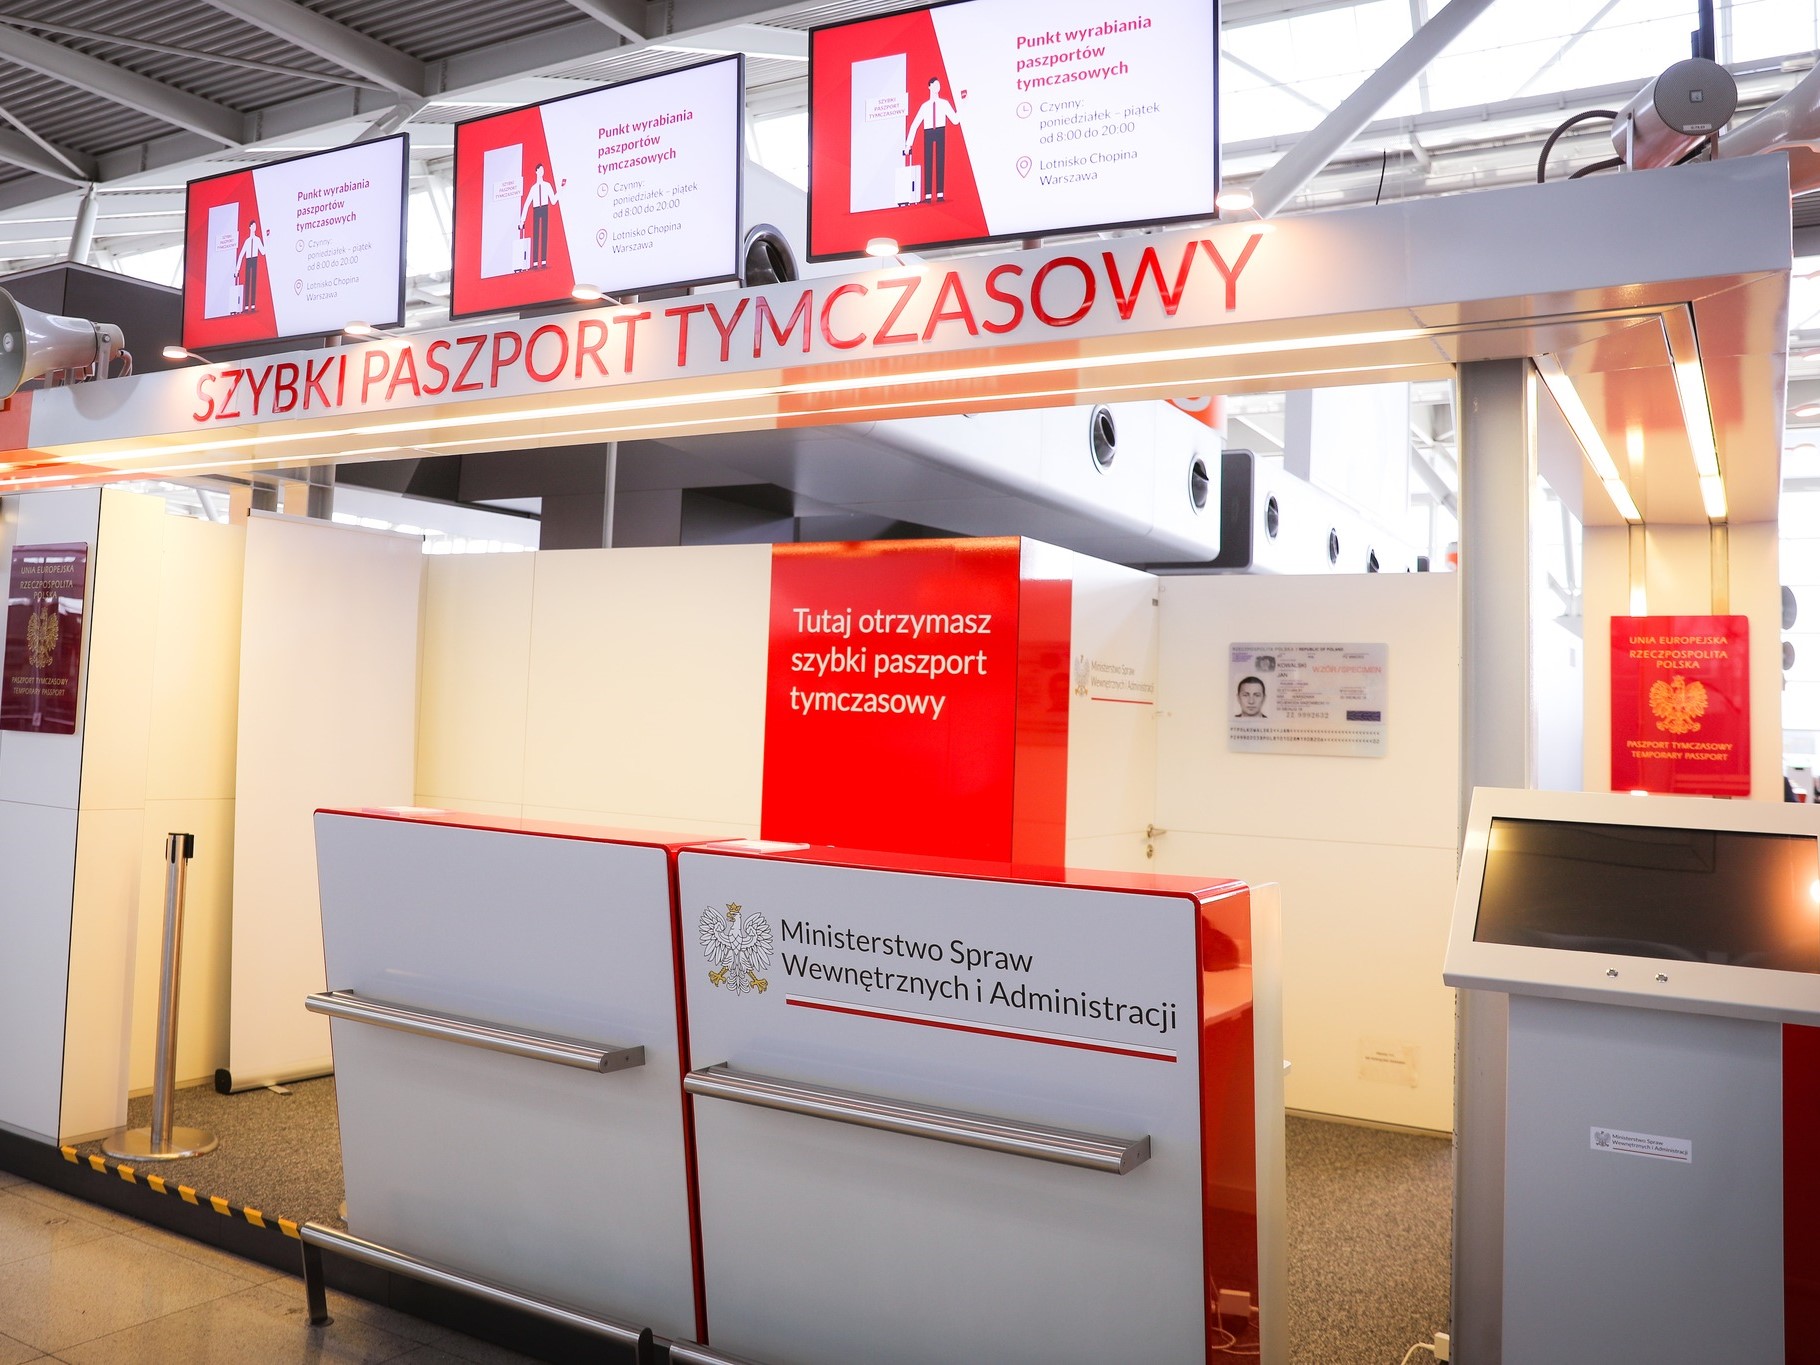 Nově otevřené místo k vydávání dočasných pasů na varšavském letišti. Zdroj: Facebook.com - Lotnisko Chopina